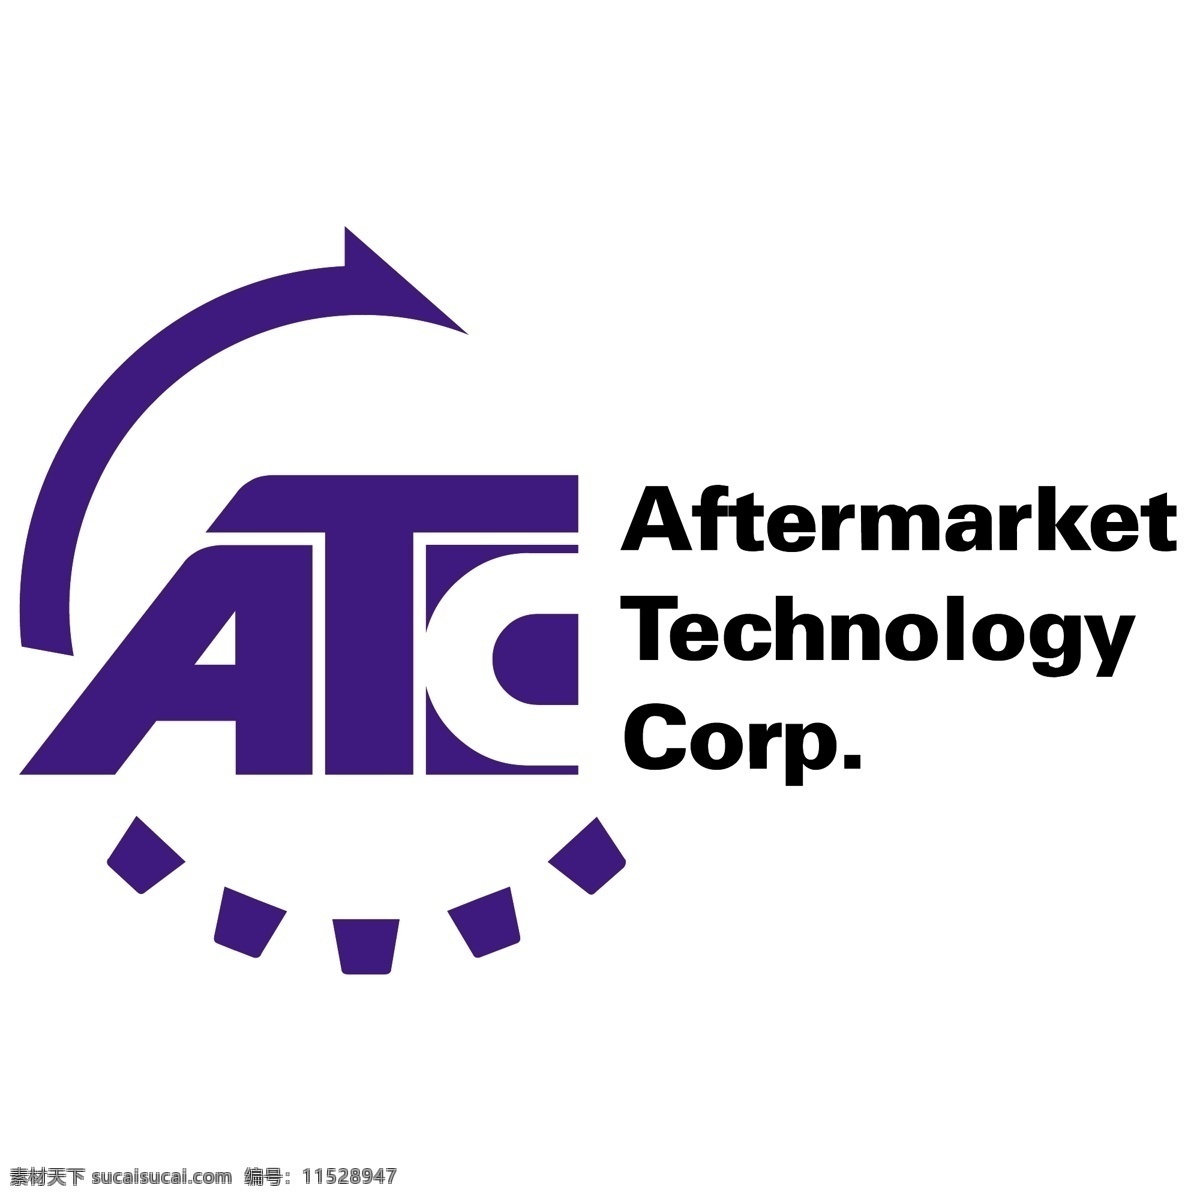 空中 交通 管制 标志 免费 atc atc的标志 psd源文件 logo设计